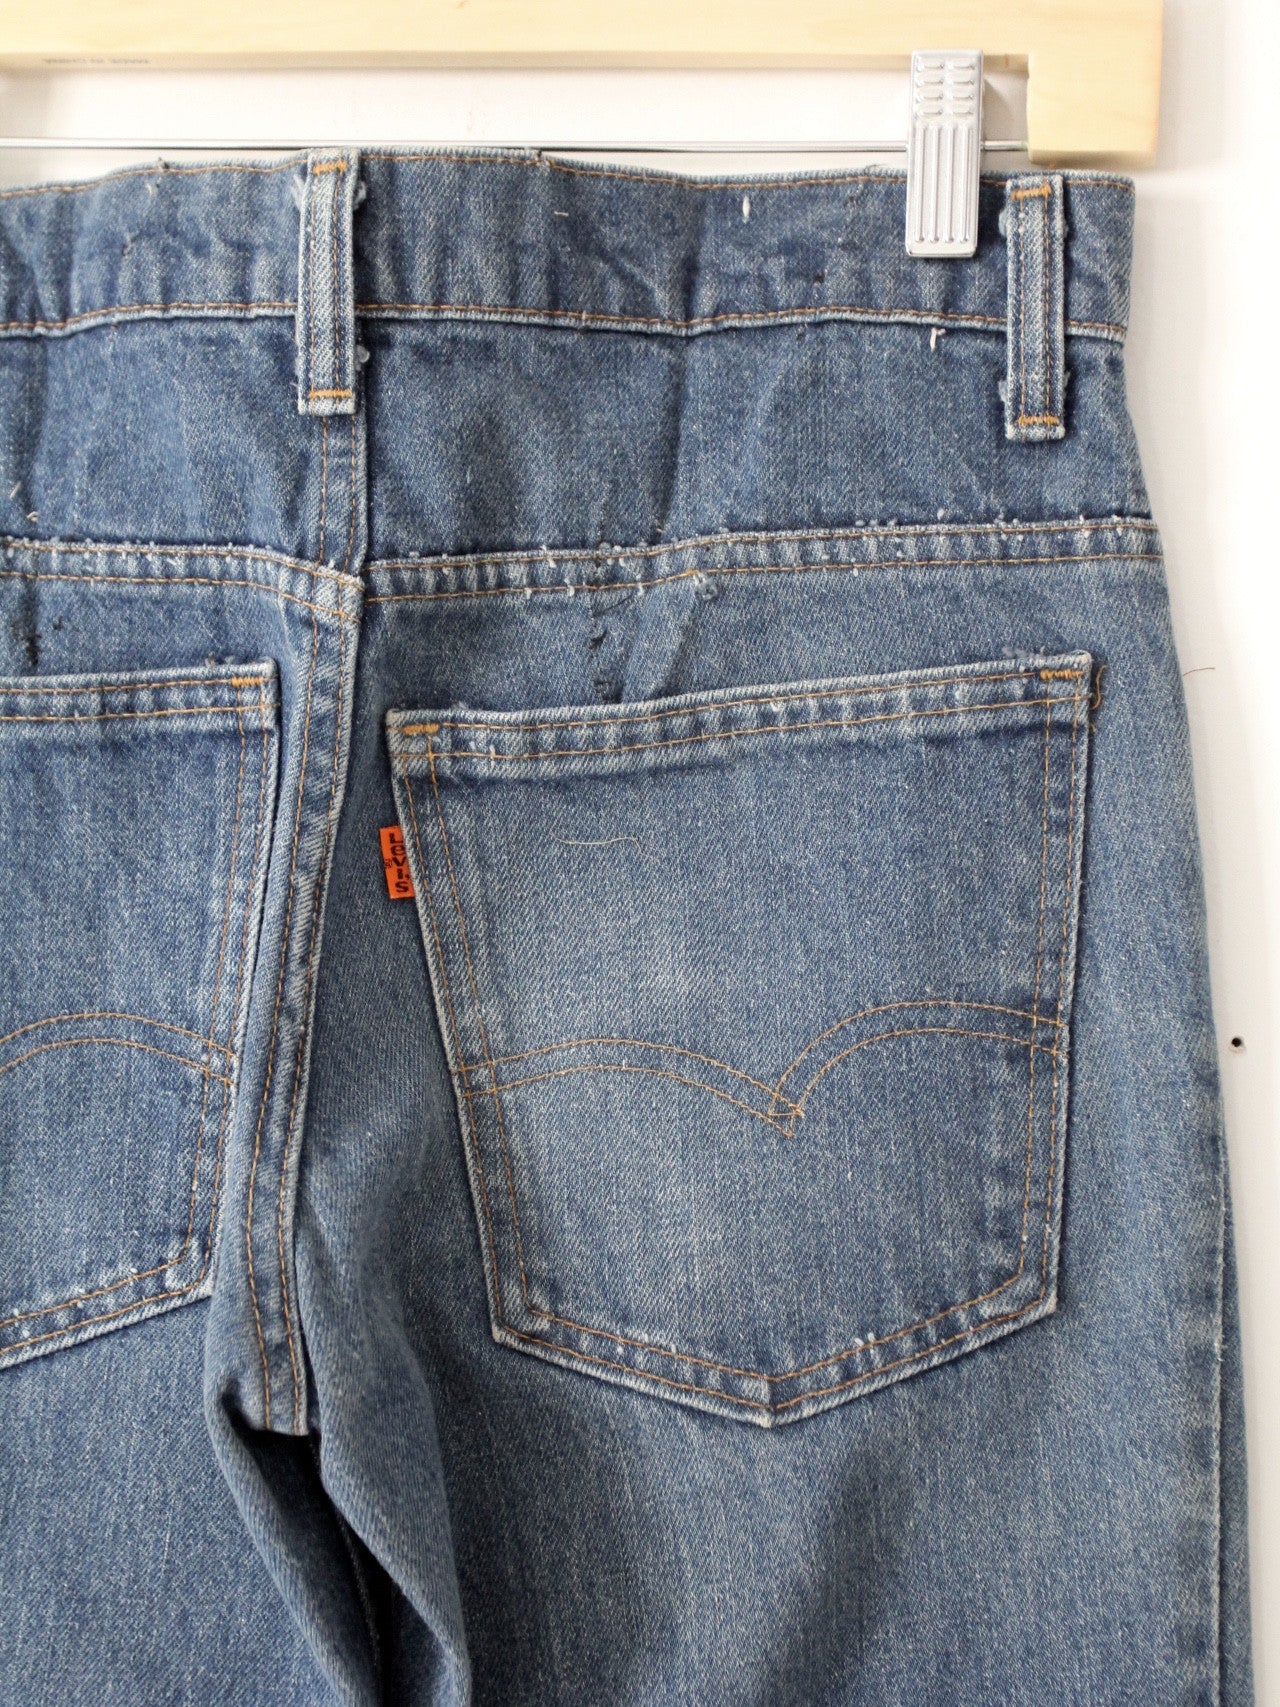 vintage 684 Levis denim jeans, 29 x 29 – 86 Vintage